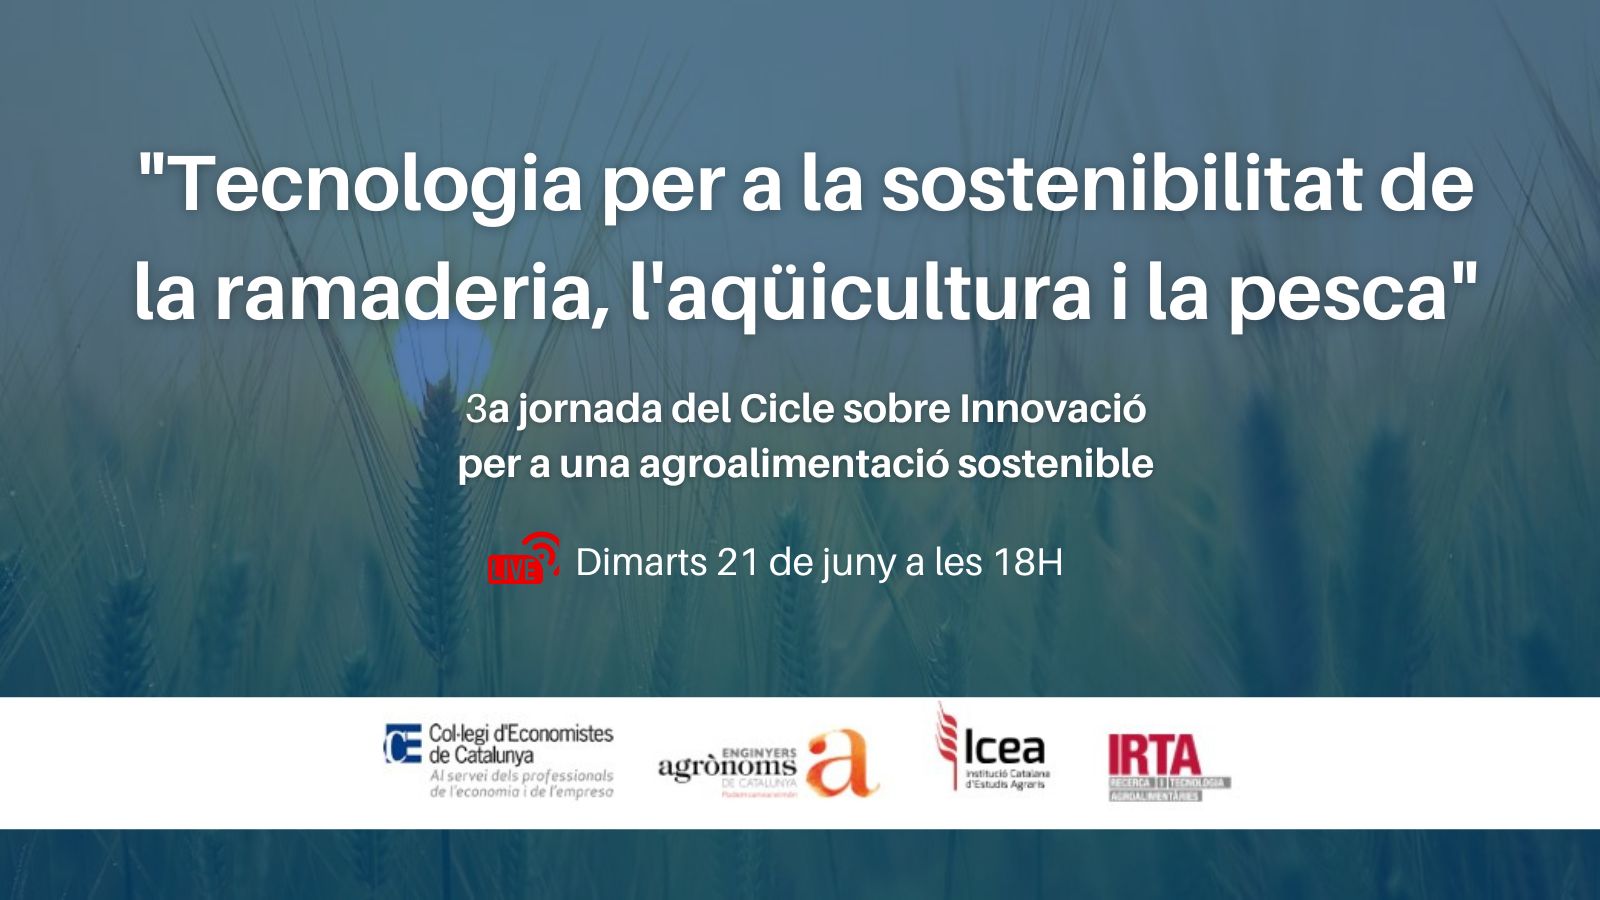 Cicle de jornades sobre Innovació per una agroalimentació sostenible - 3a Jornada: ''Tecnologia per a la sostenibilitat de la ramaderia, l'aqüicultura i la pesca''